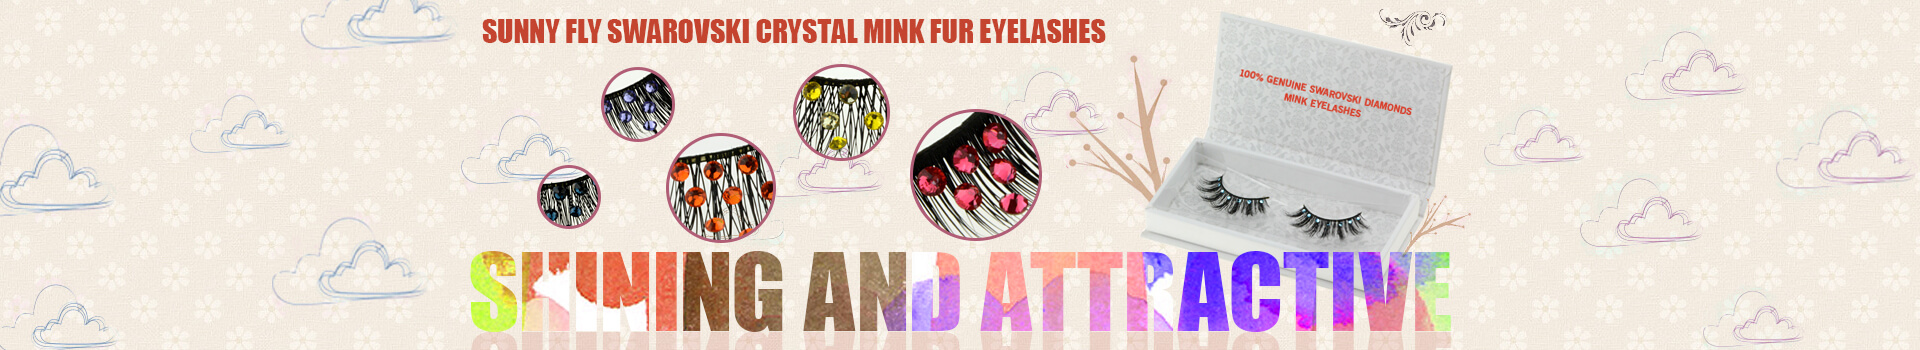 Swarovski Crystal Mink Fur Eyelashes MS04